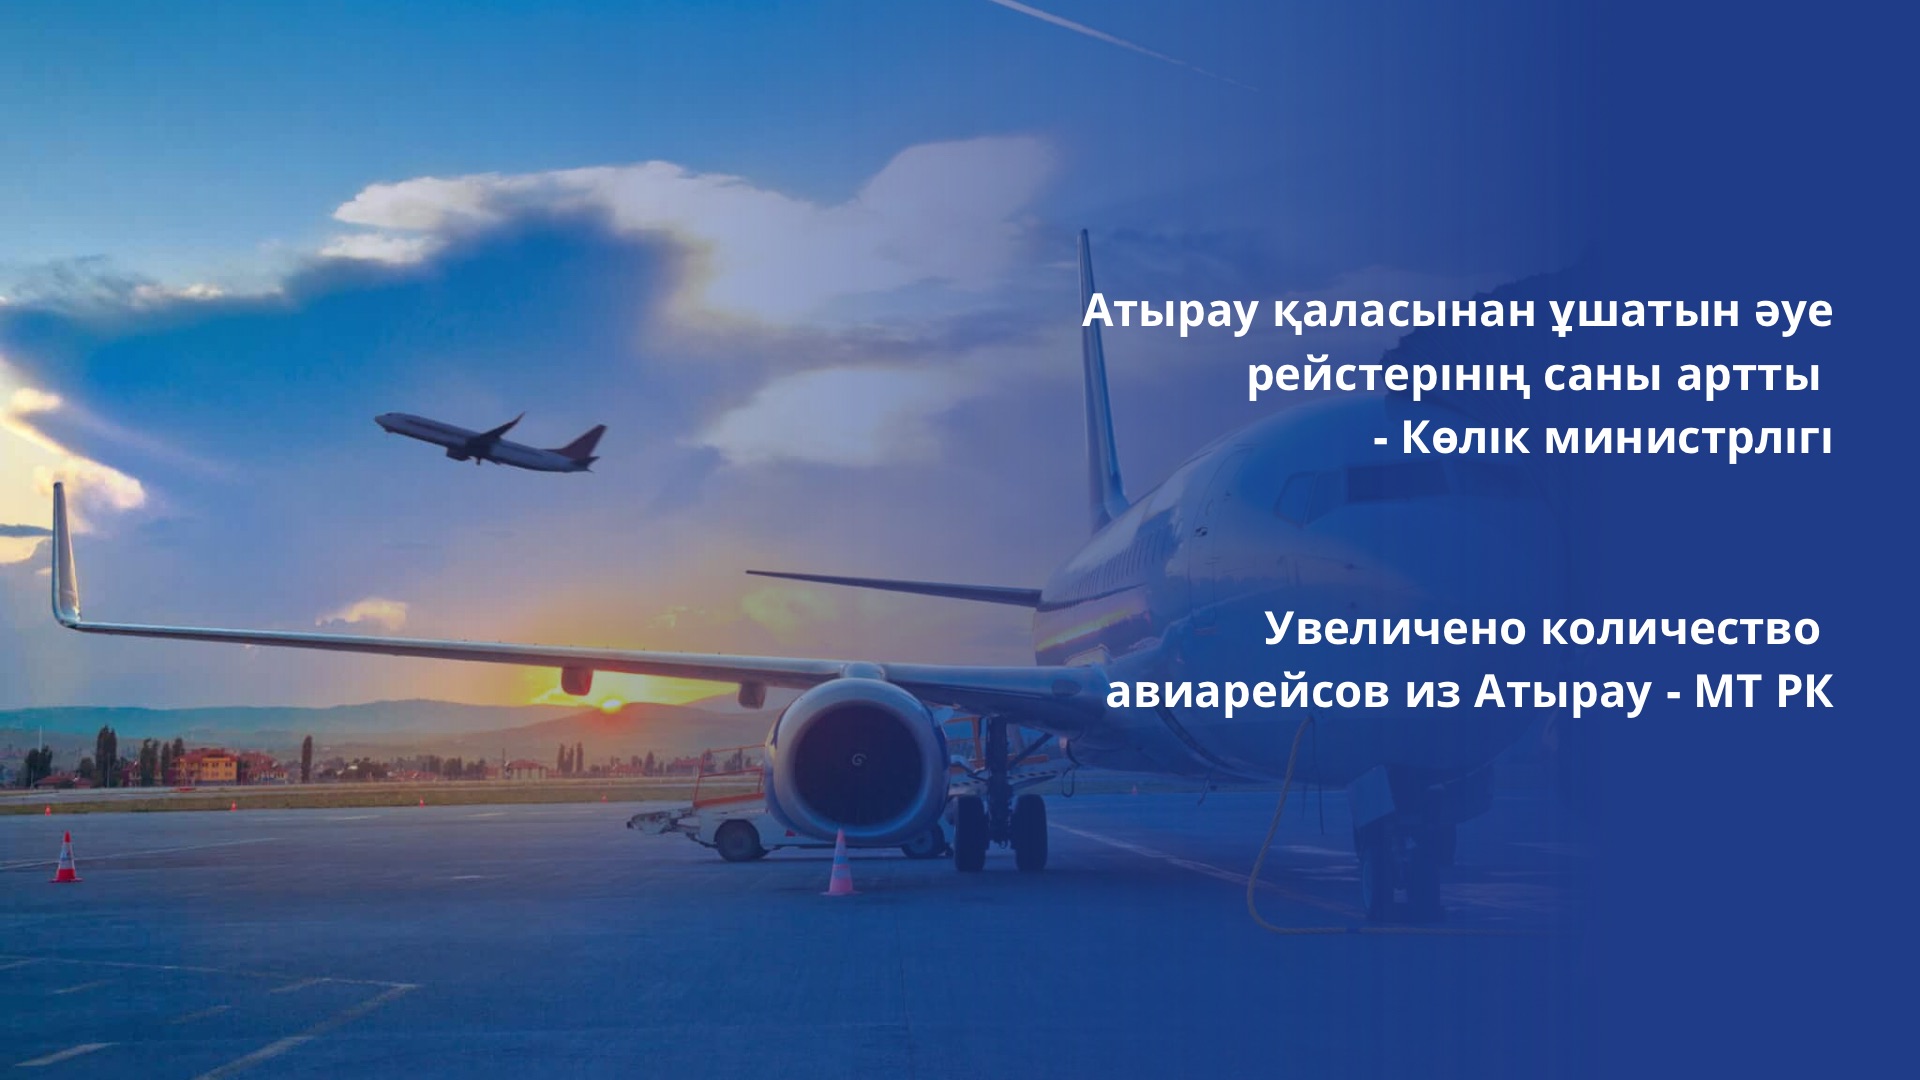 Увеличено количество авиарейсов из Атырау - МТ РК